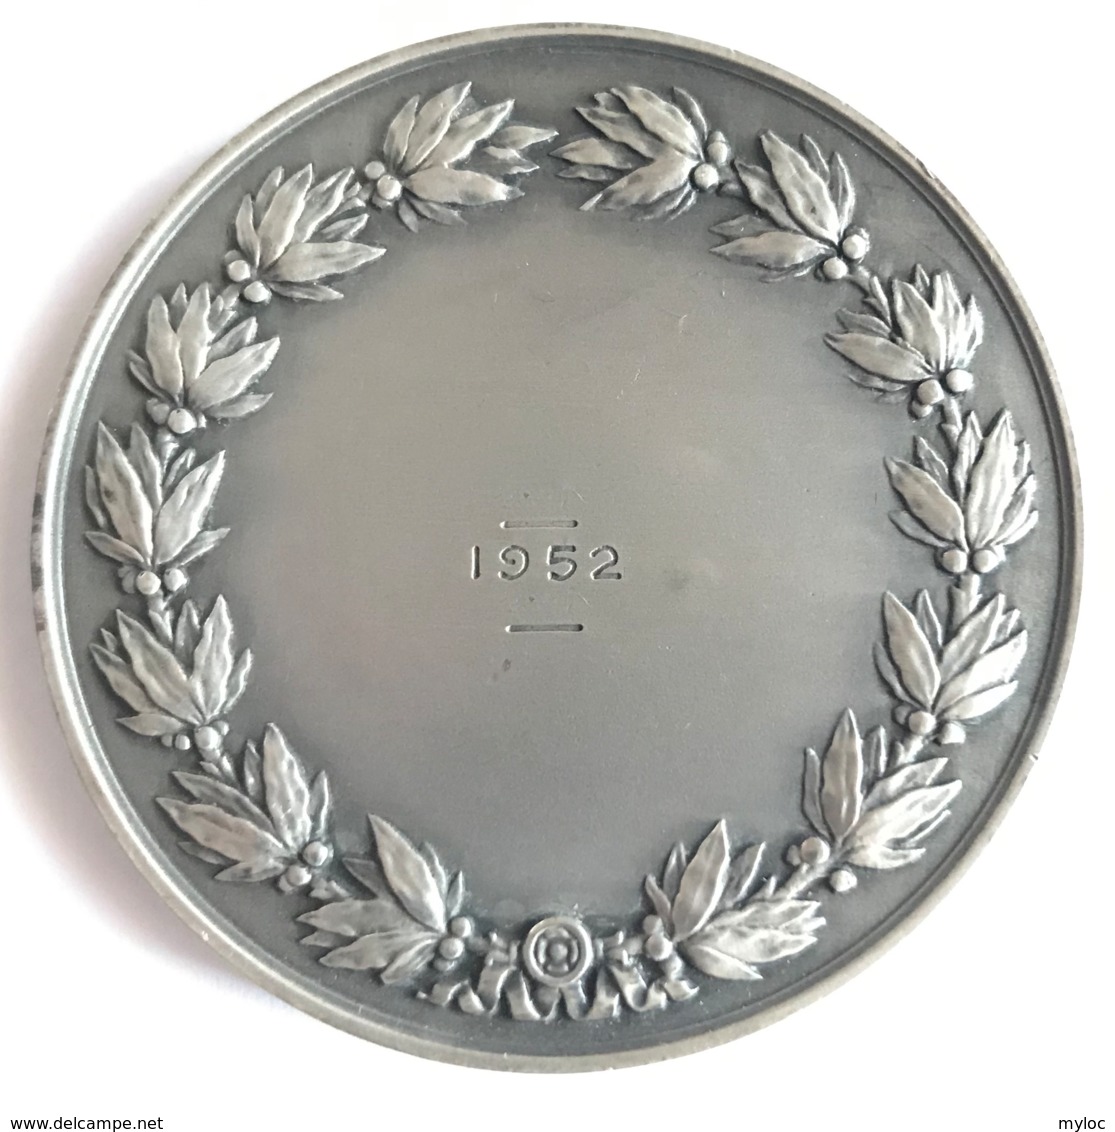 Médaille Assurances Compagnies Du Soleil. R.B. Baron. 1952. Poinçon 1 Argent. Diam. 50mm - 65gr - Professionali / Di Società